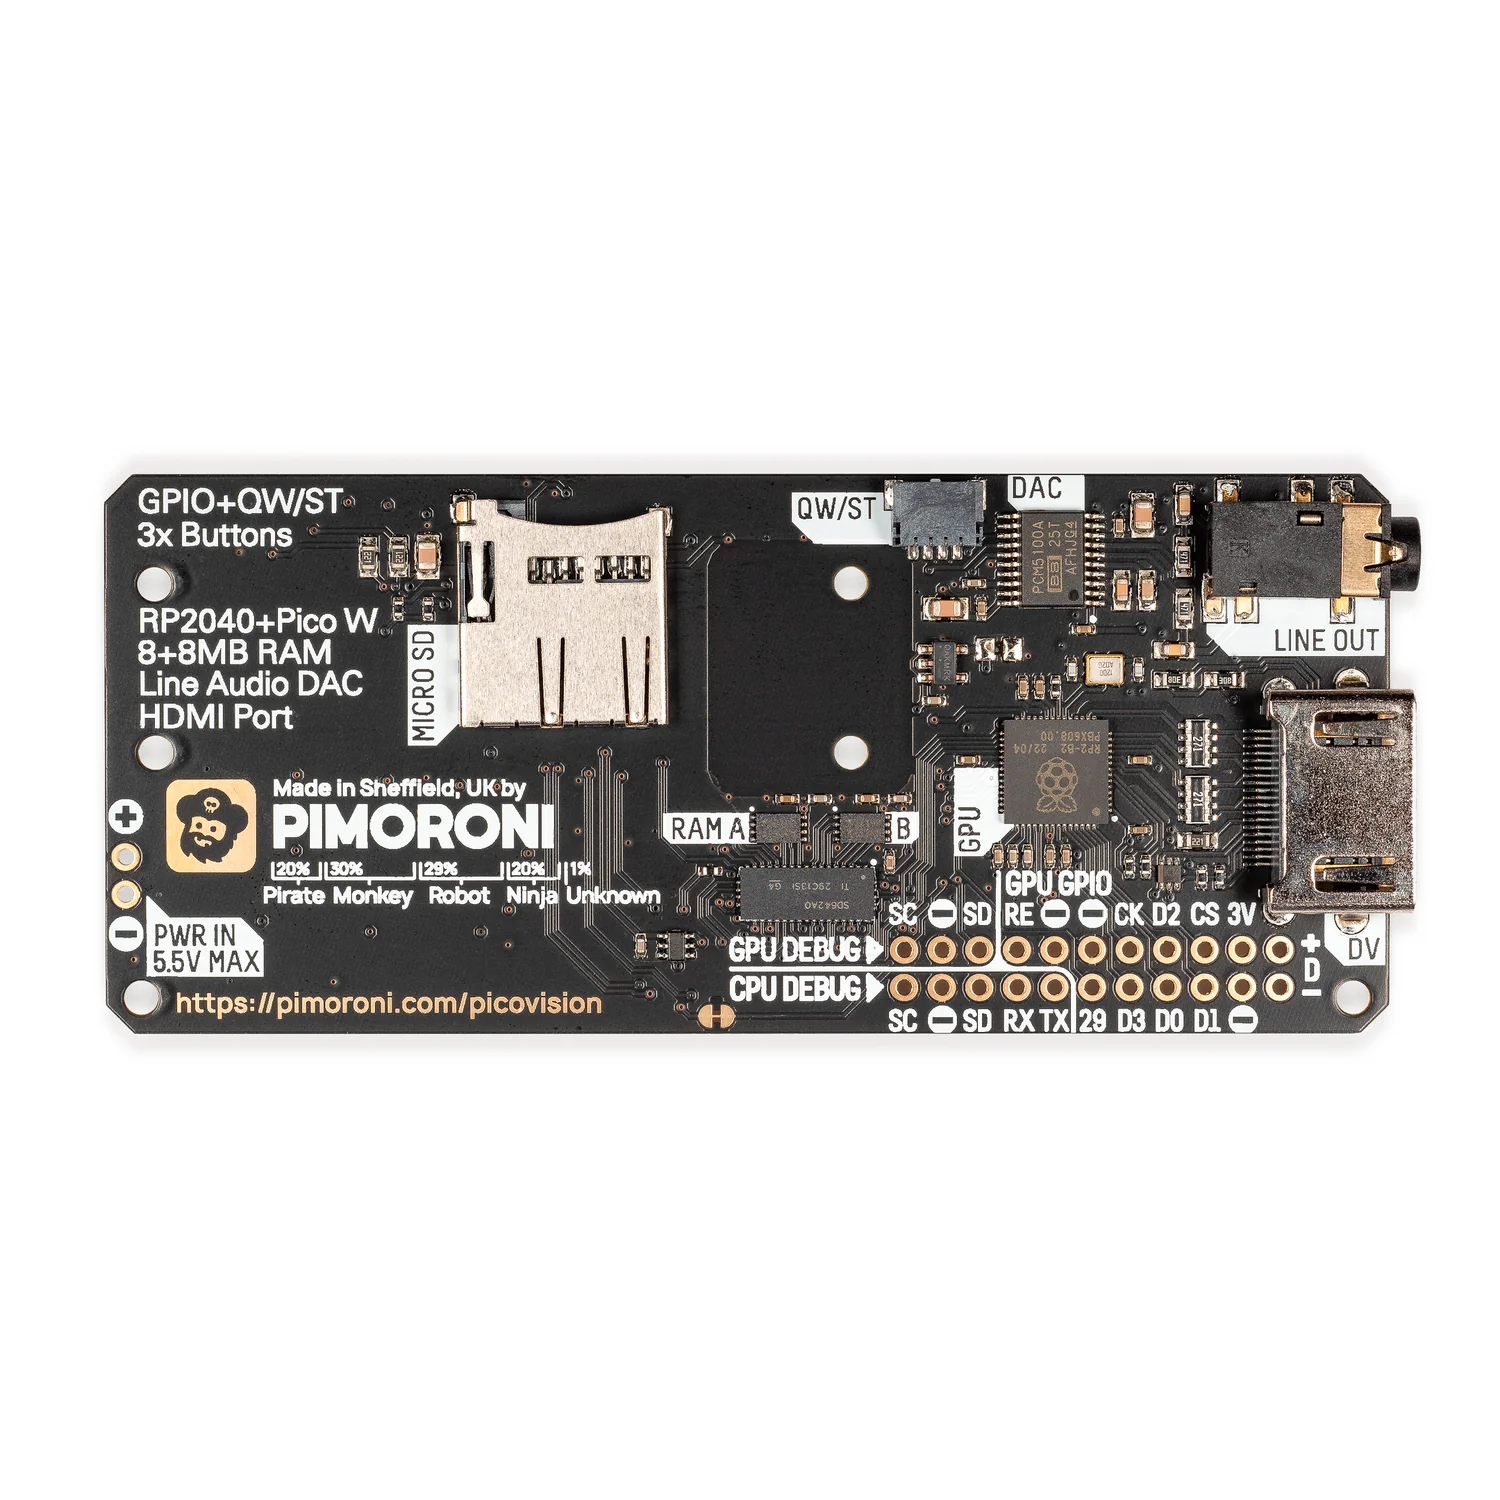 PicoVision vo Pimoroni blick auf die Rückseite des Bords, gut zusehen GPU und CPU, RP2040 und PicoW,sowie LineAudio und HDMI